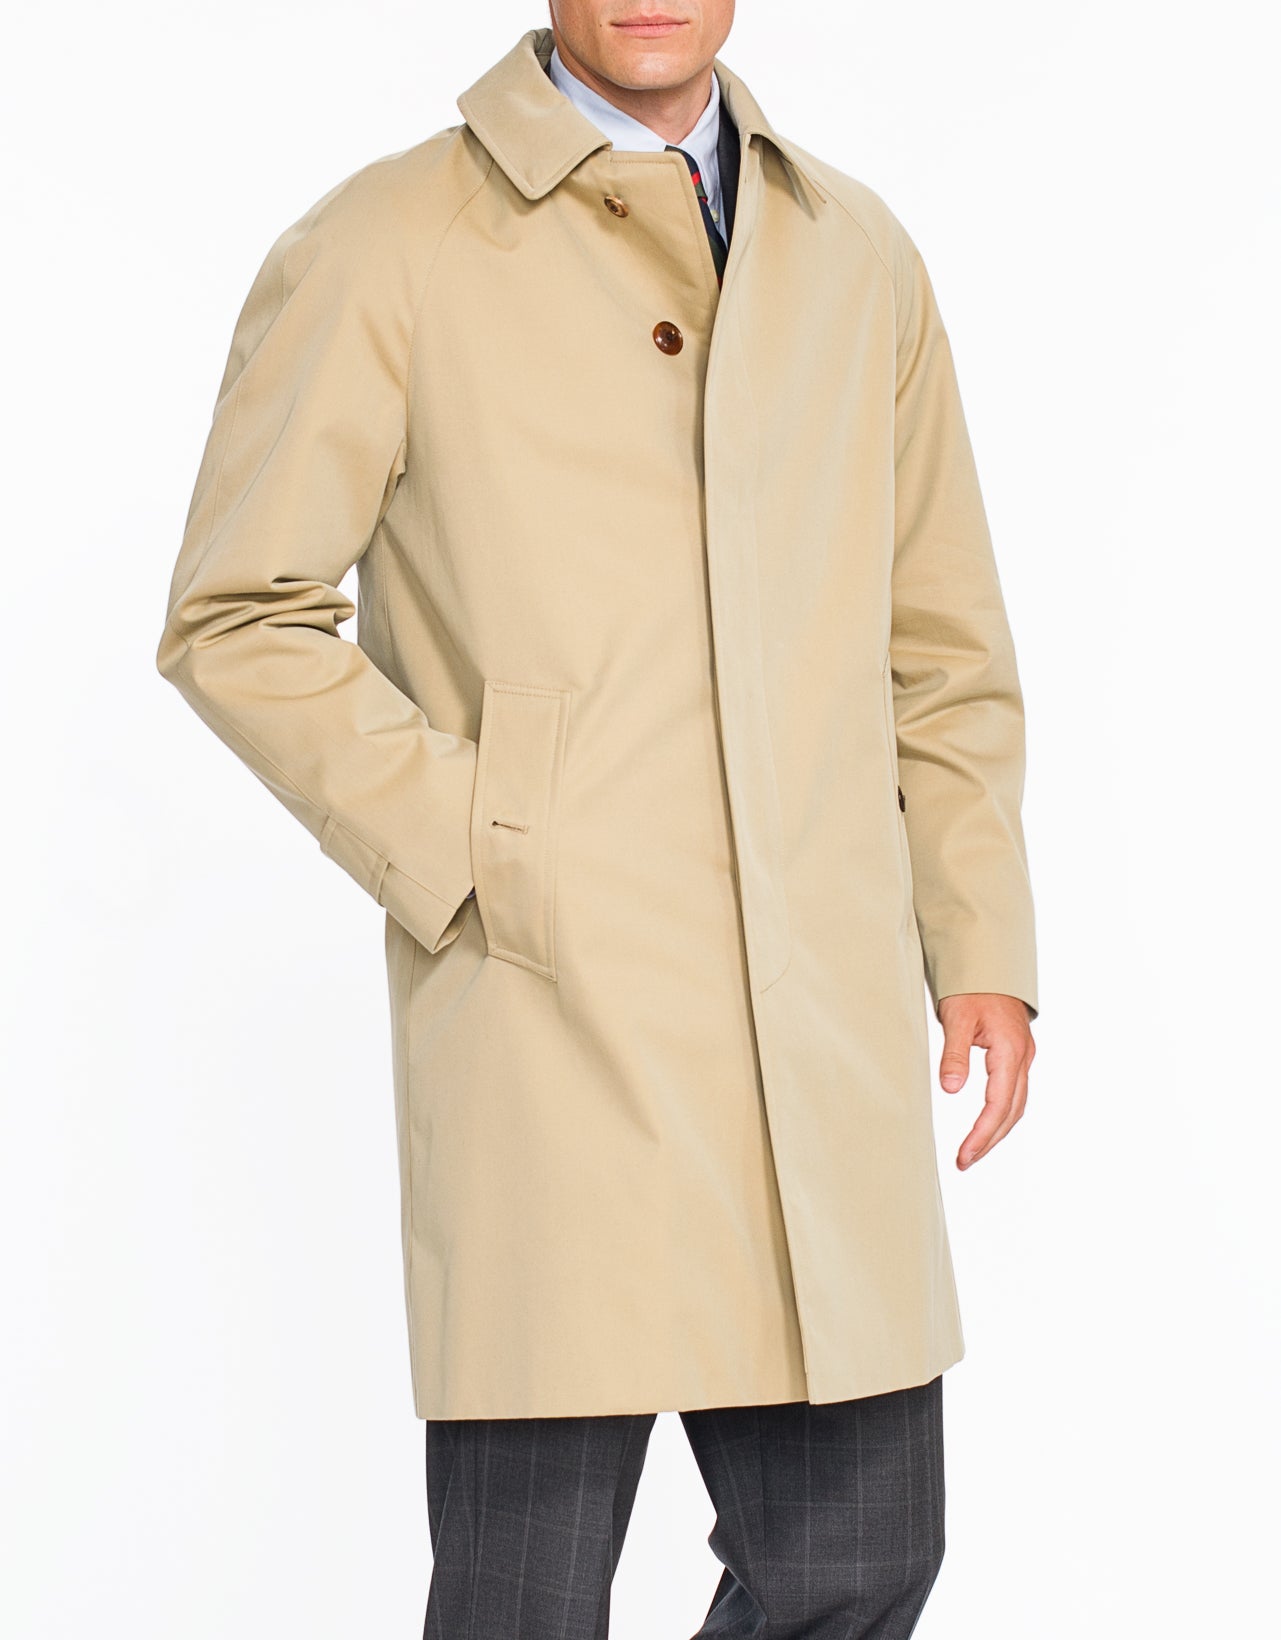 X Grenfell Tan Cotton Raincoat - Short | Men's Sport Coats - J. Press